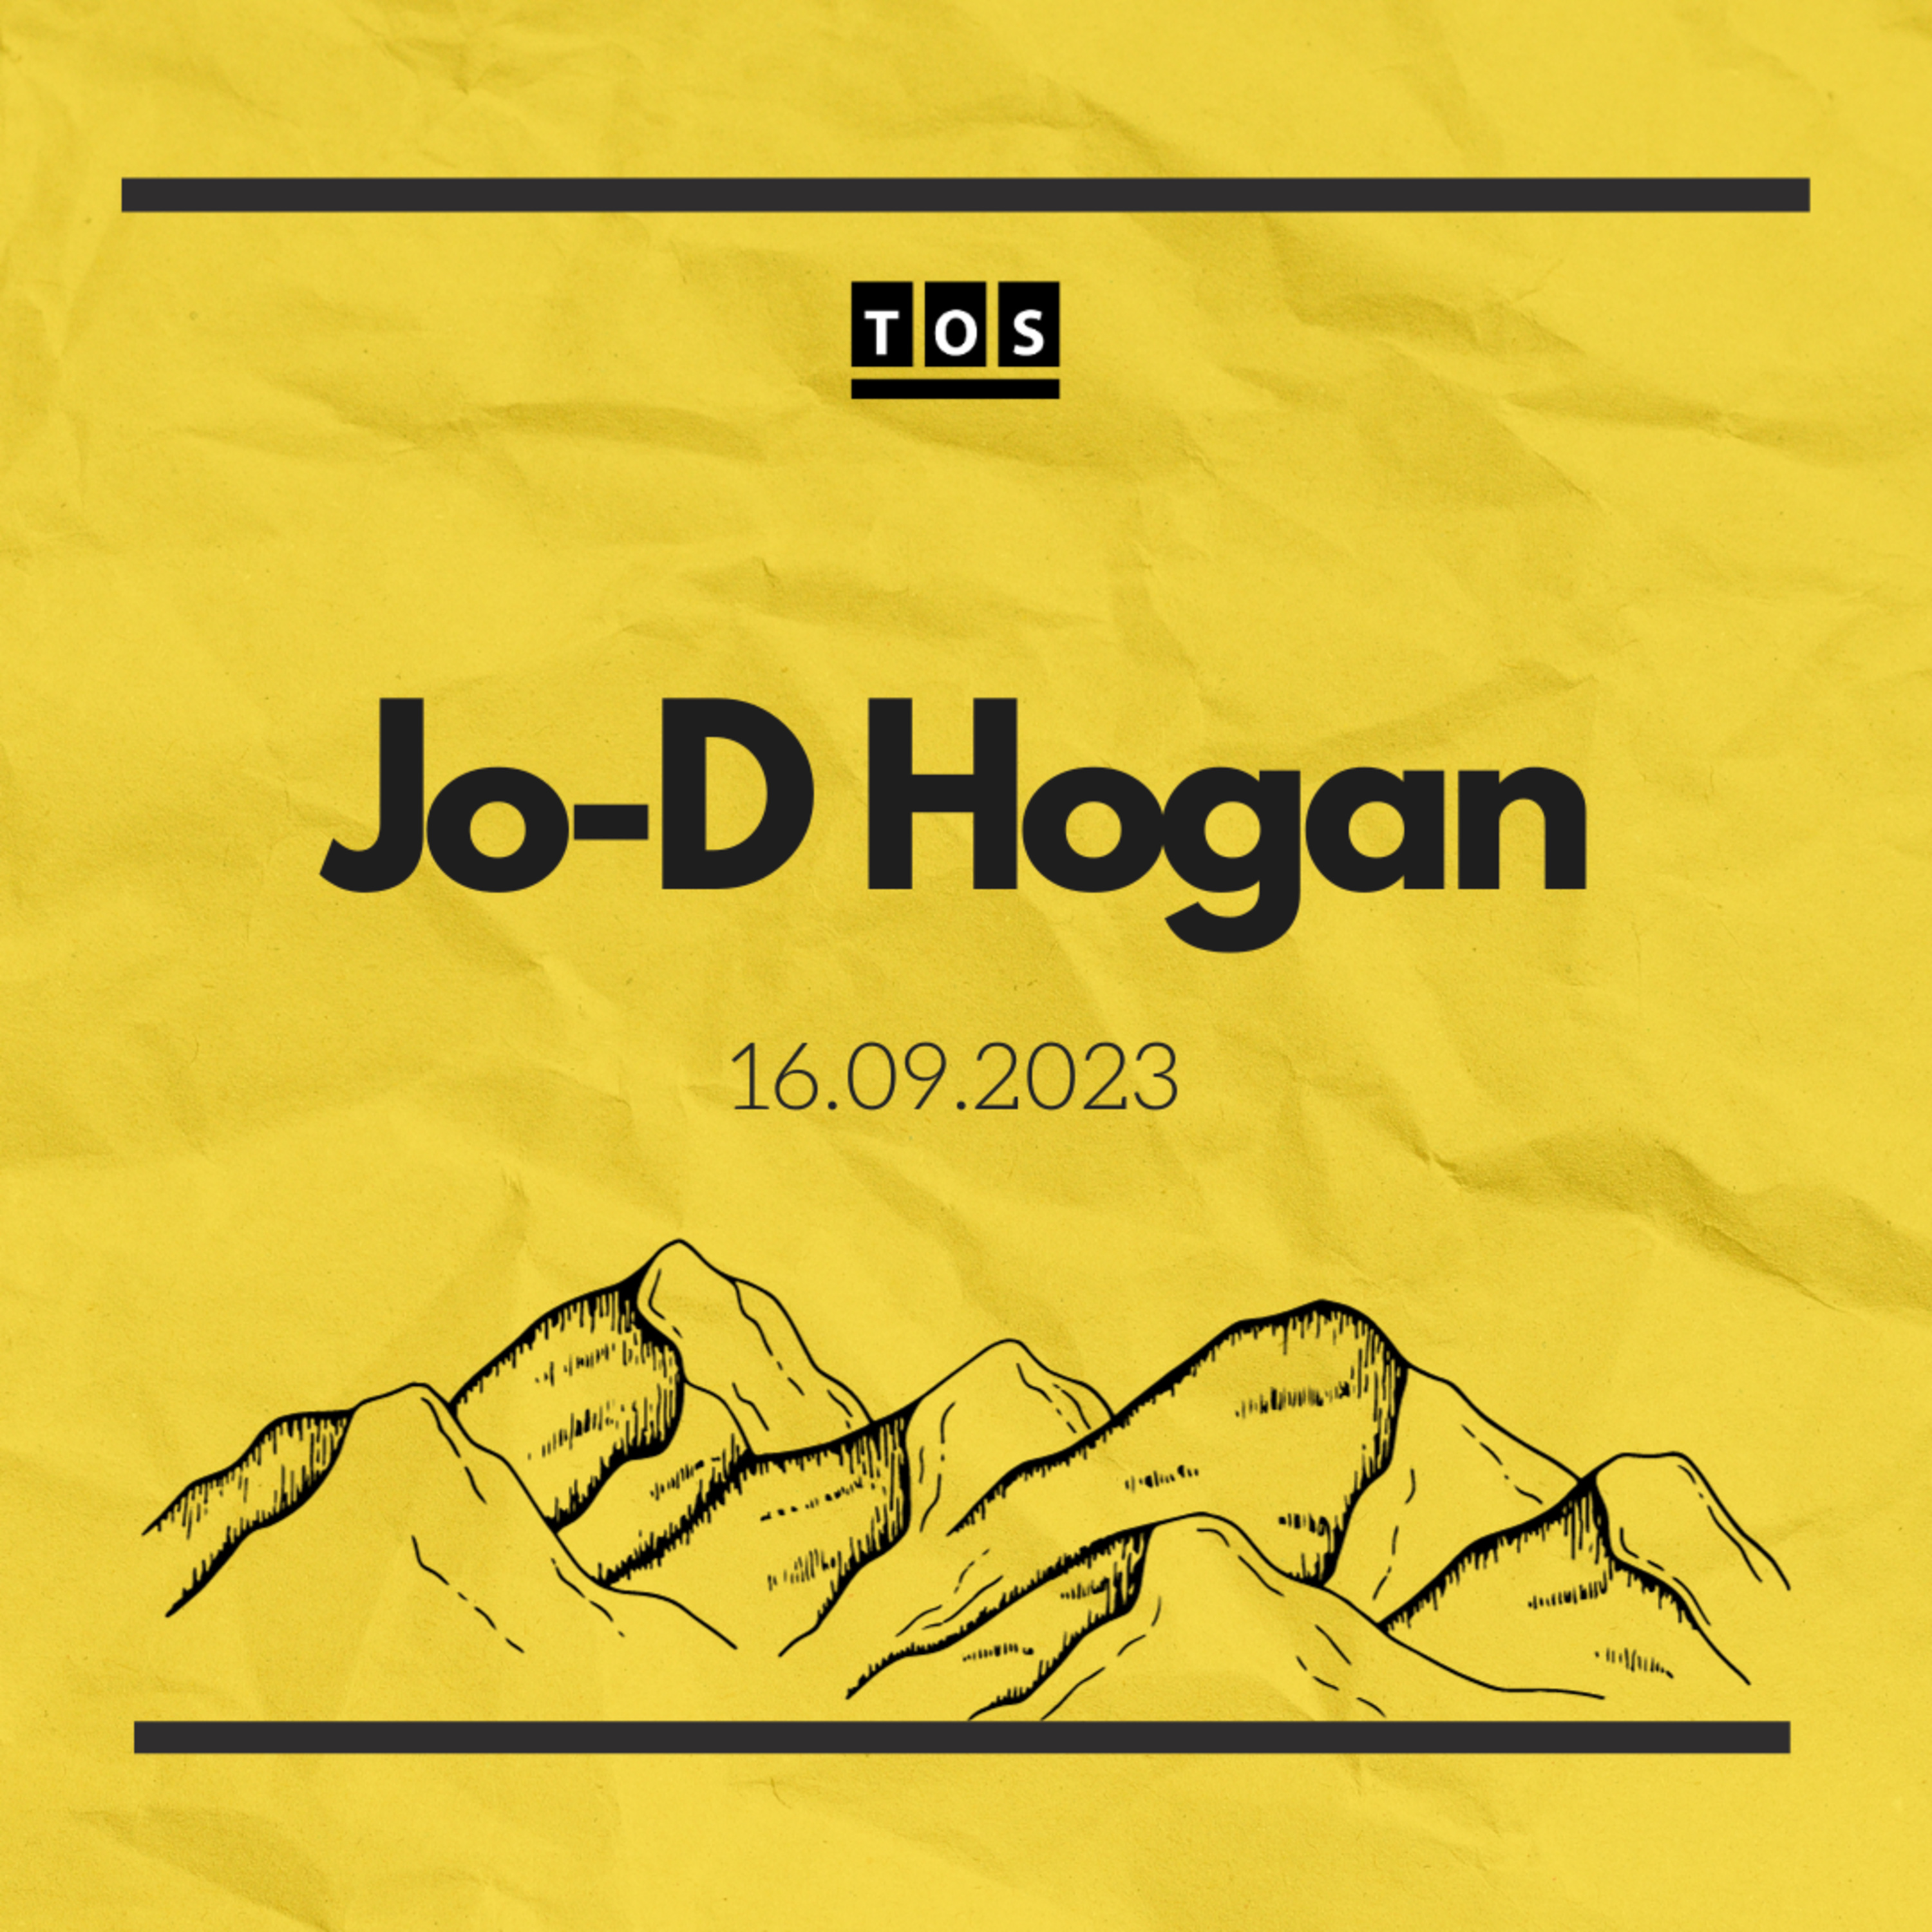 Jo-D Hogan - 16.09.2023 hero artwork